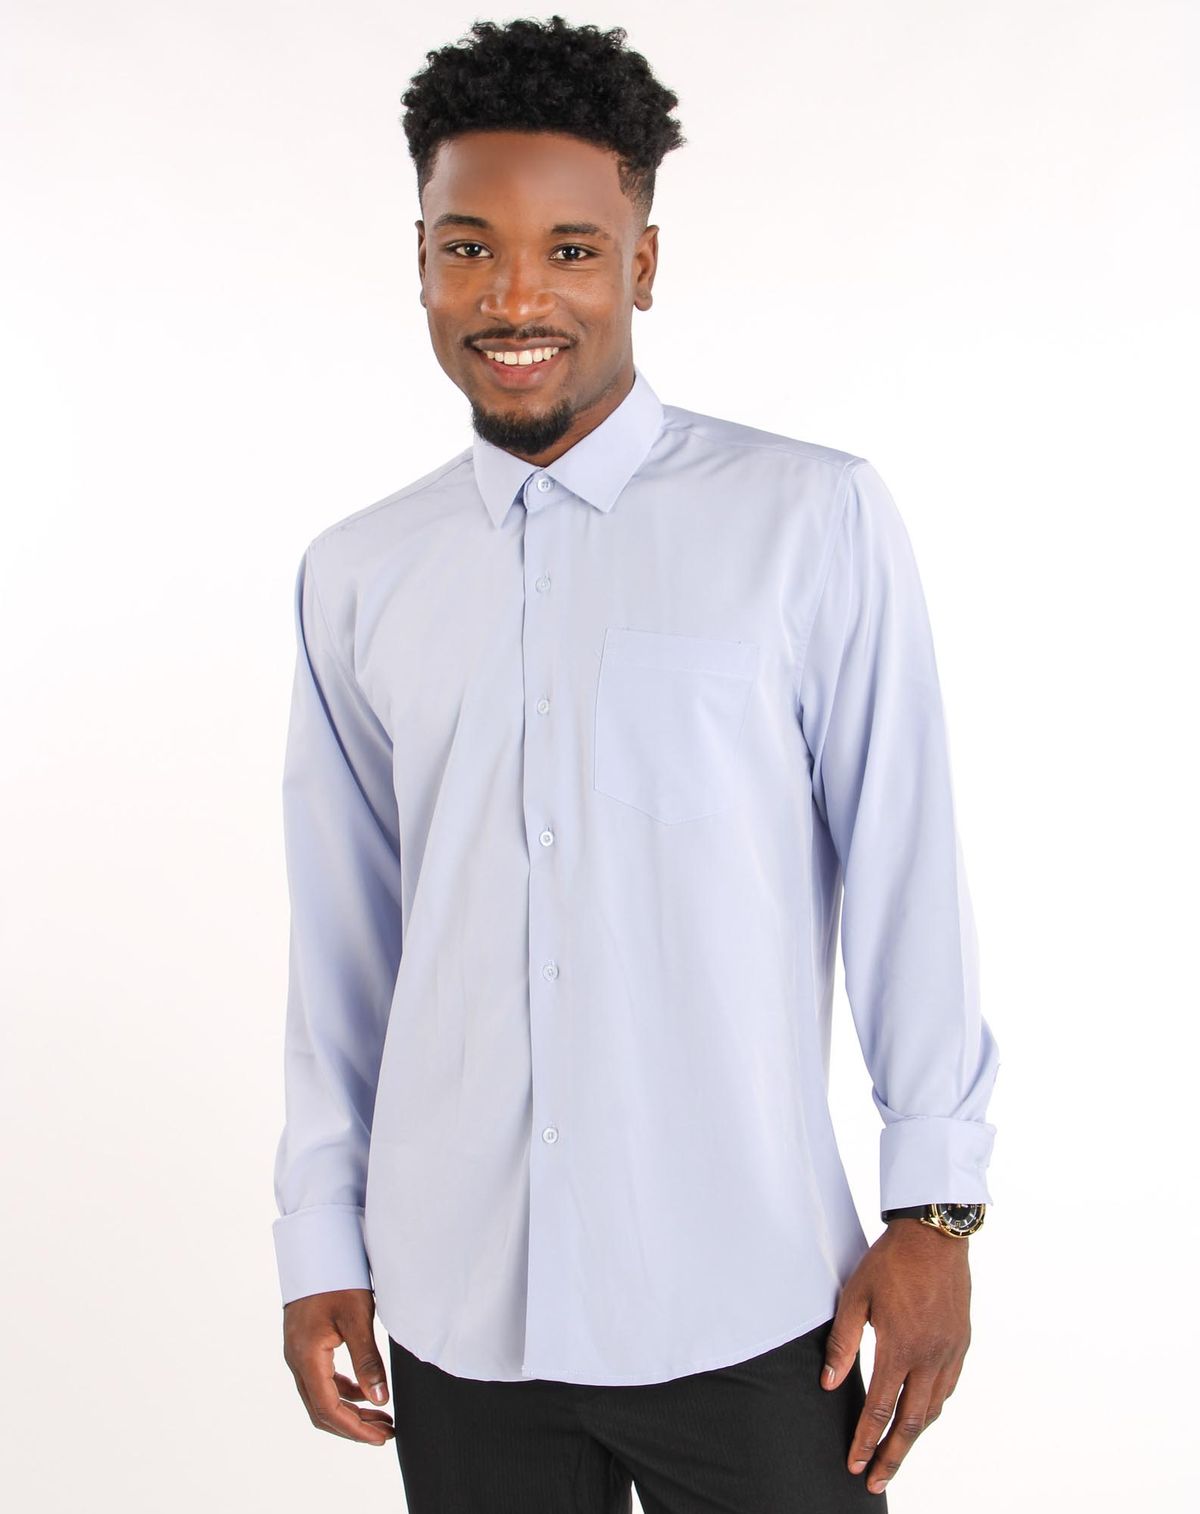 651054001-camisa-masculina-manga-longa-alfaiataria-bolso-azul-p-14e